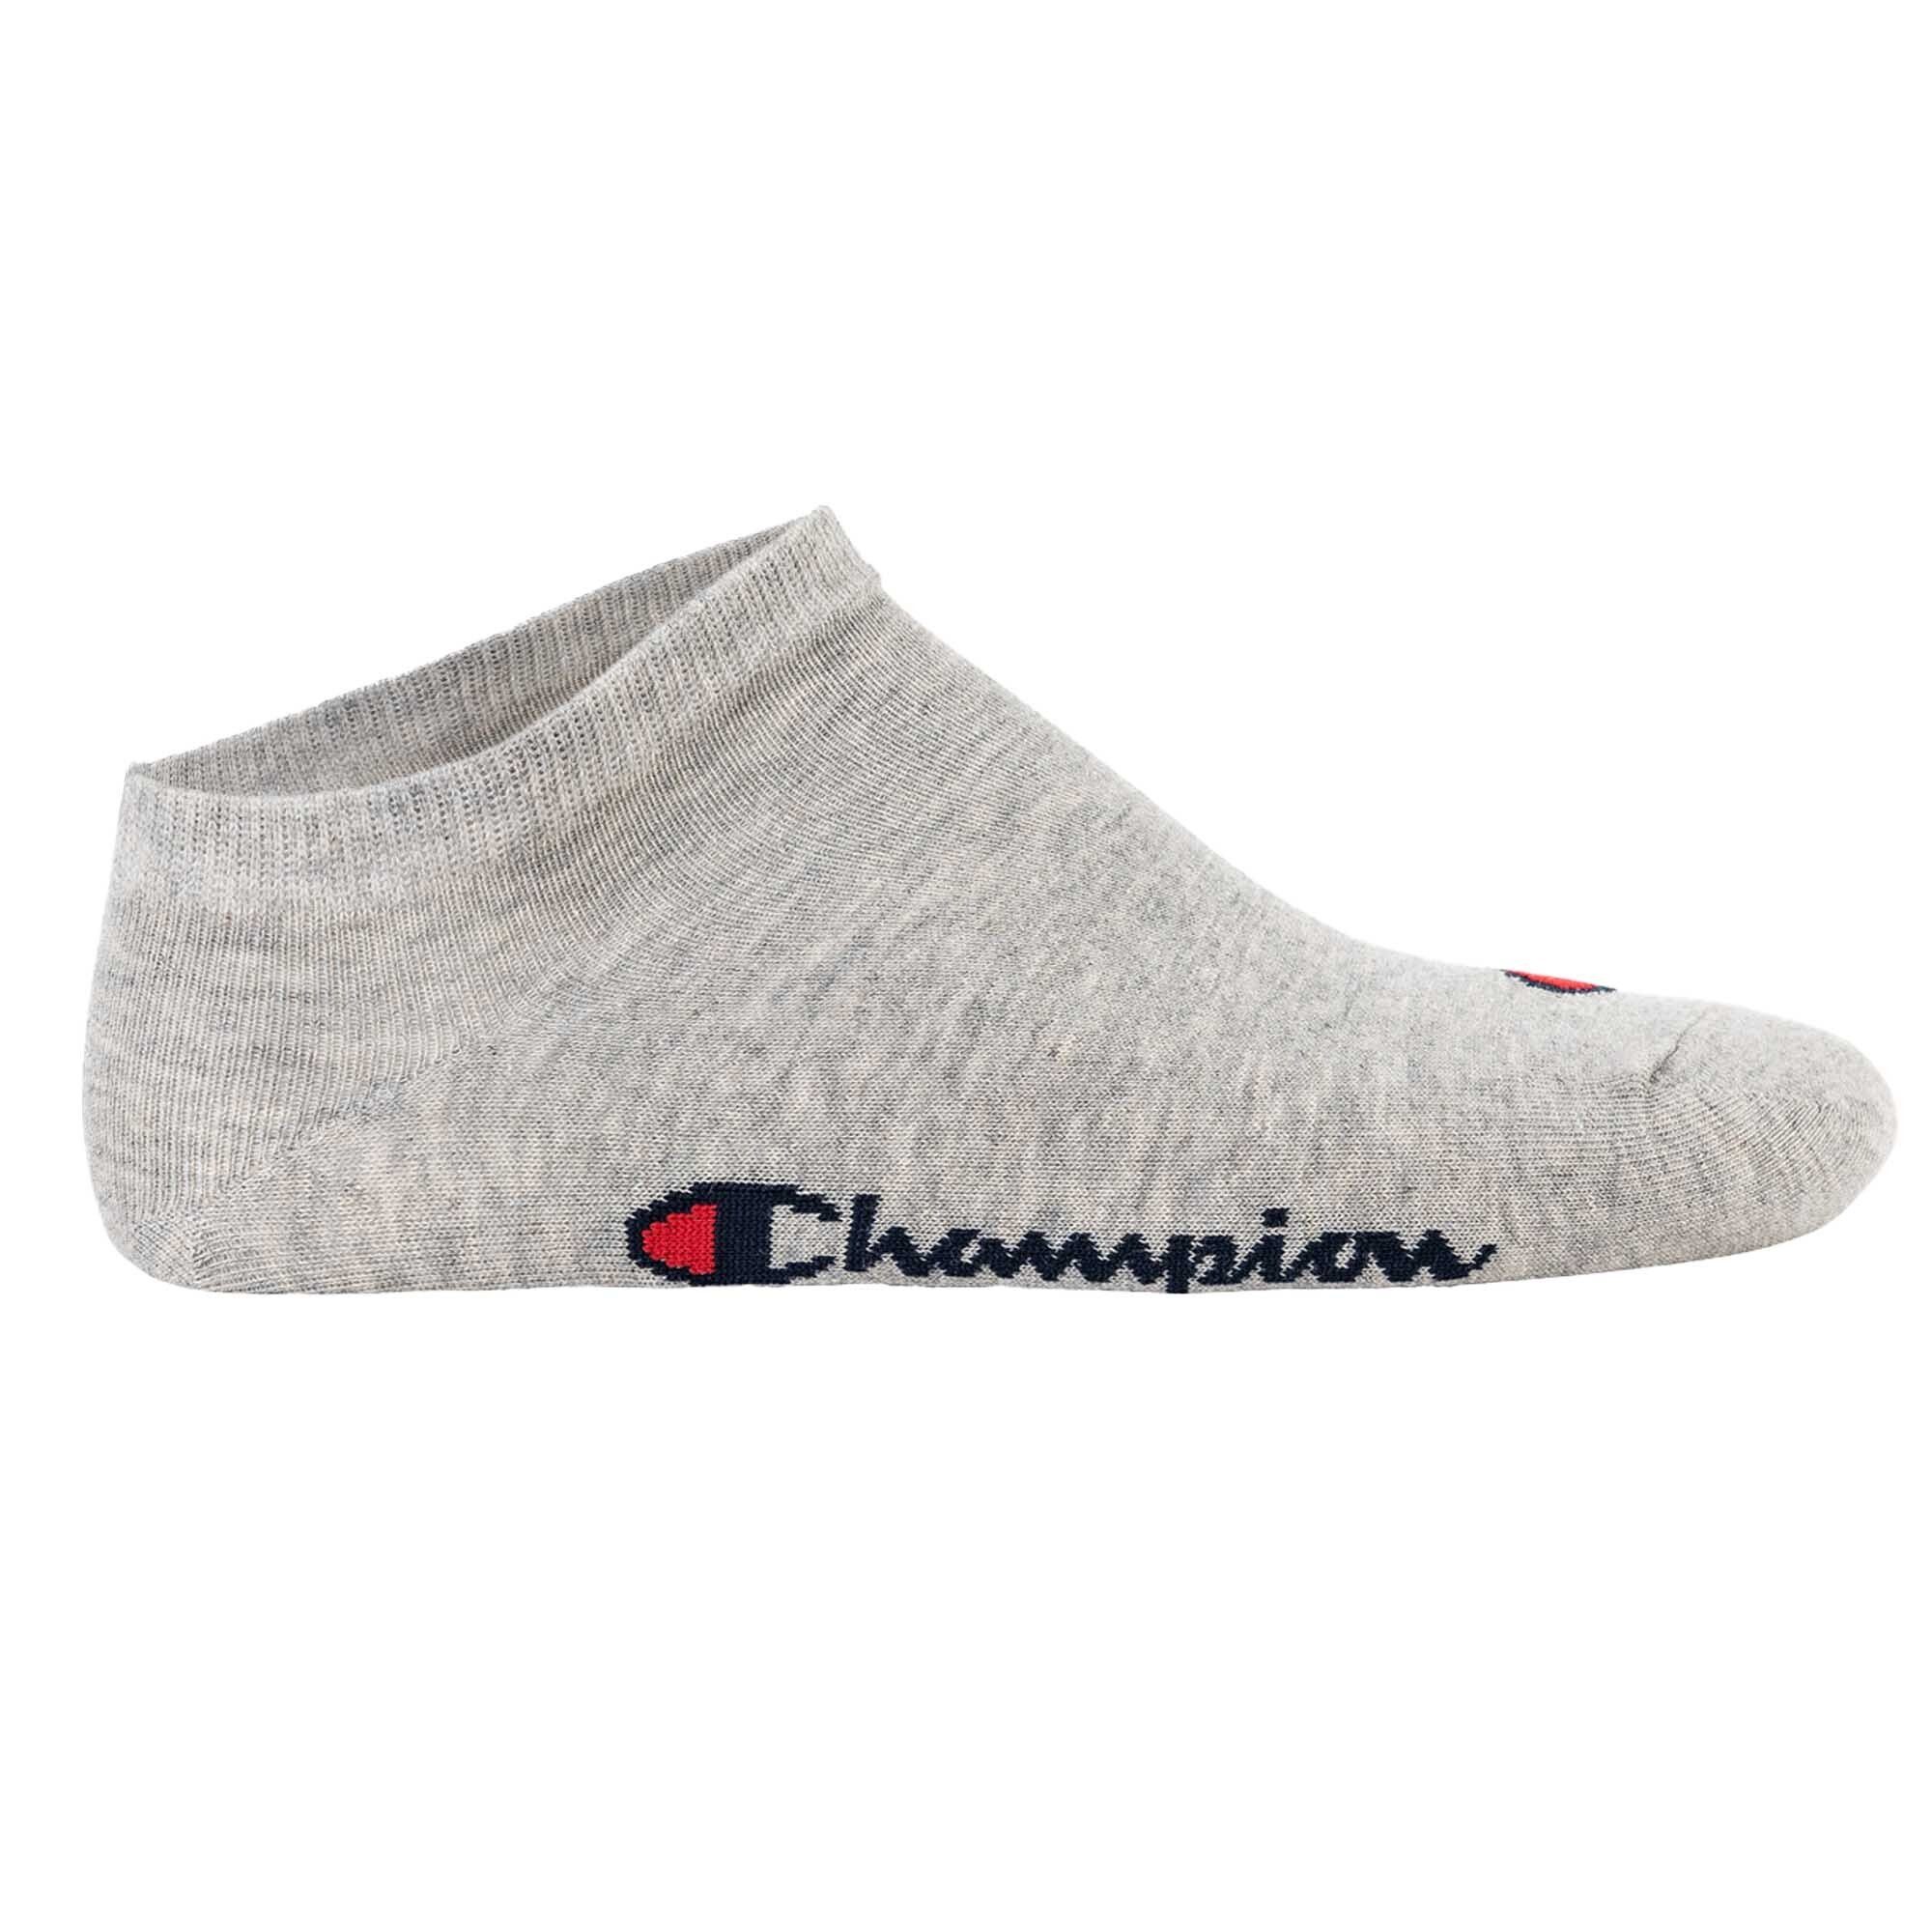 Basic Sneaker - Paar Socken, 3 Socken Champion Schwarz/Weiß/Grau Sportsocken Unisex